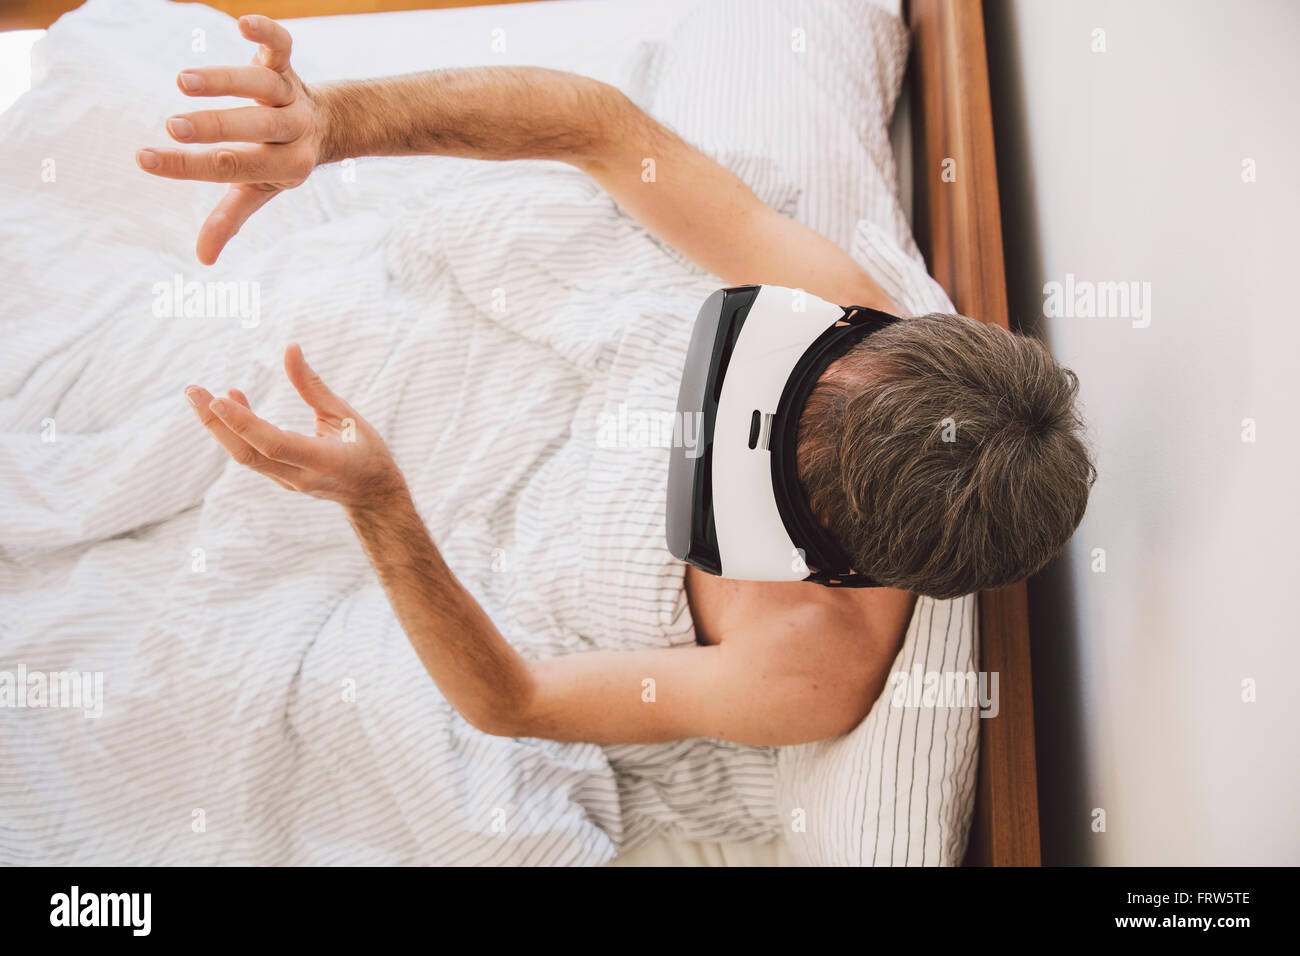 Mann im Bett mit virtual-Reality-Brille, bewegte seine Hände Stockfoto